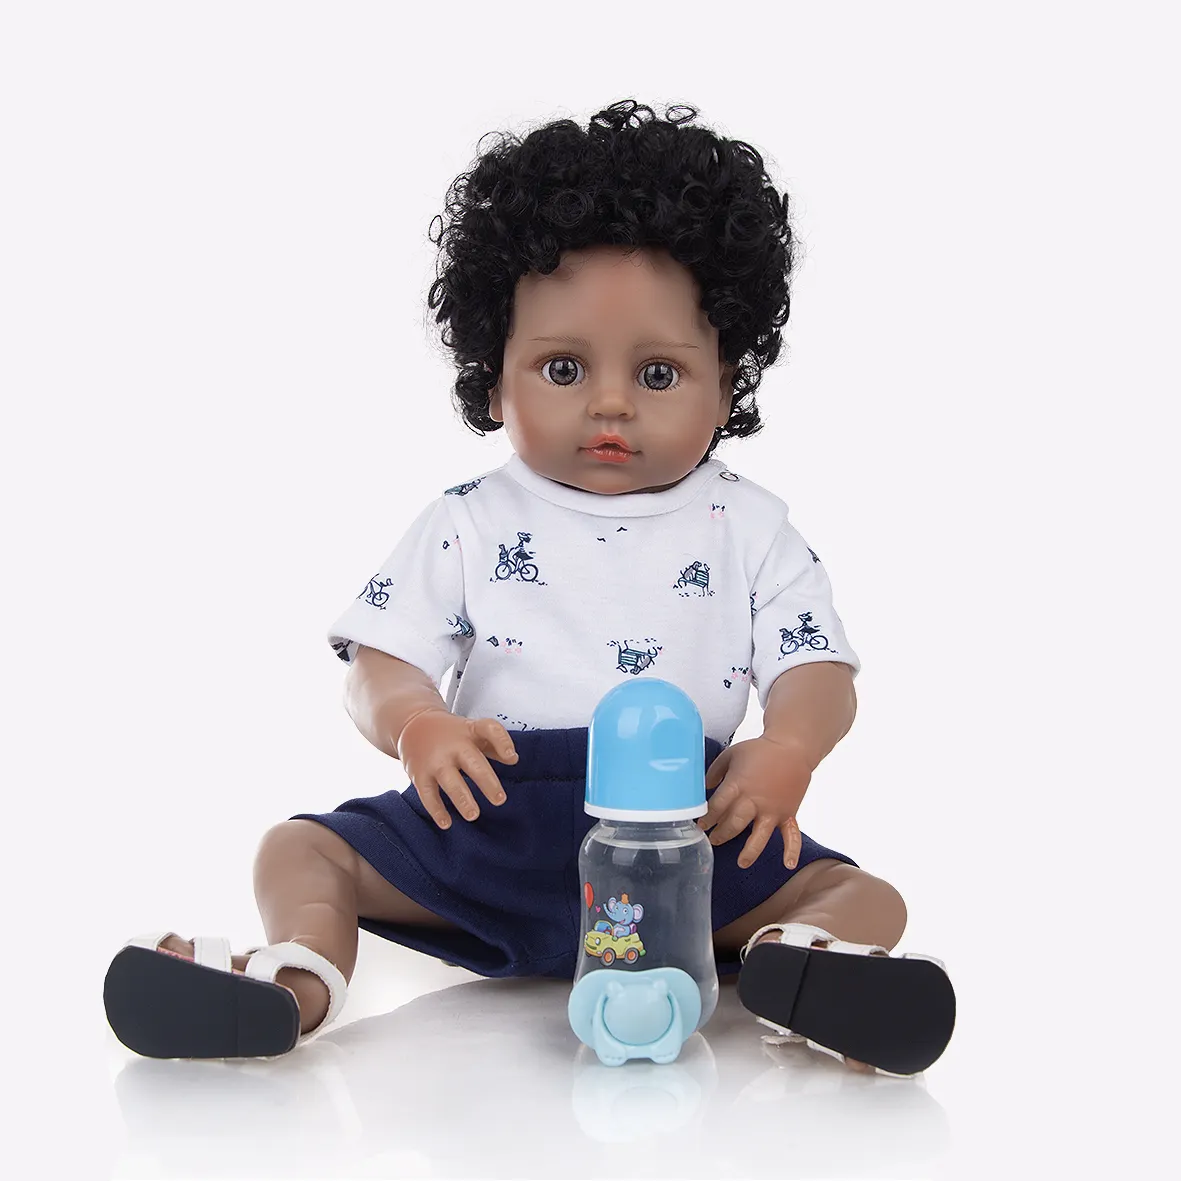 KEIUMI 49 см куклы Новорожденные полностью силиконовые виниловые реальные азиатские лицо африканская прическа для мальчиков детские куклы Новорожденные игрушки